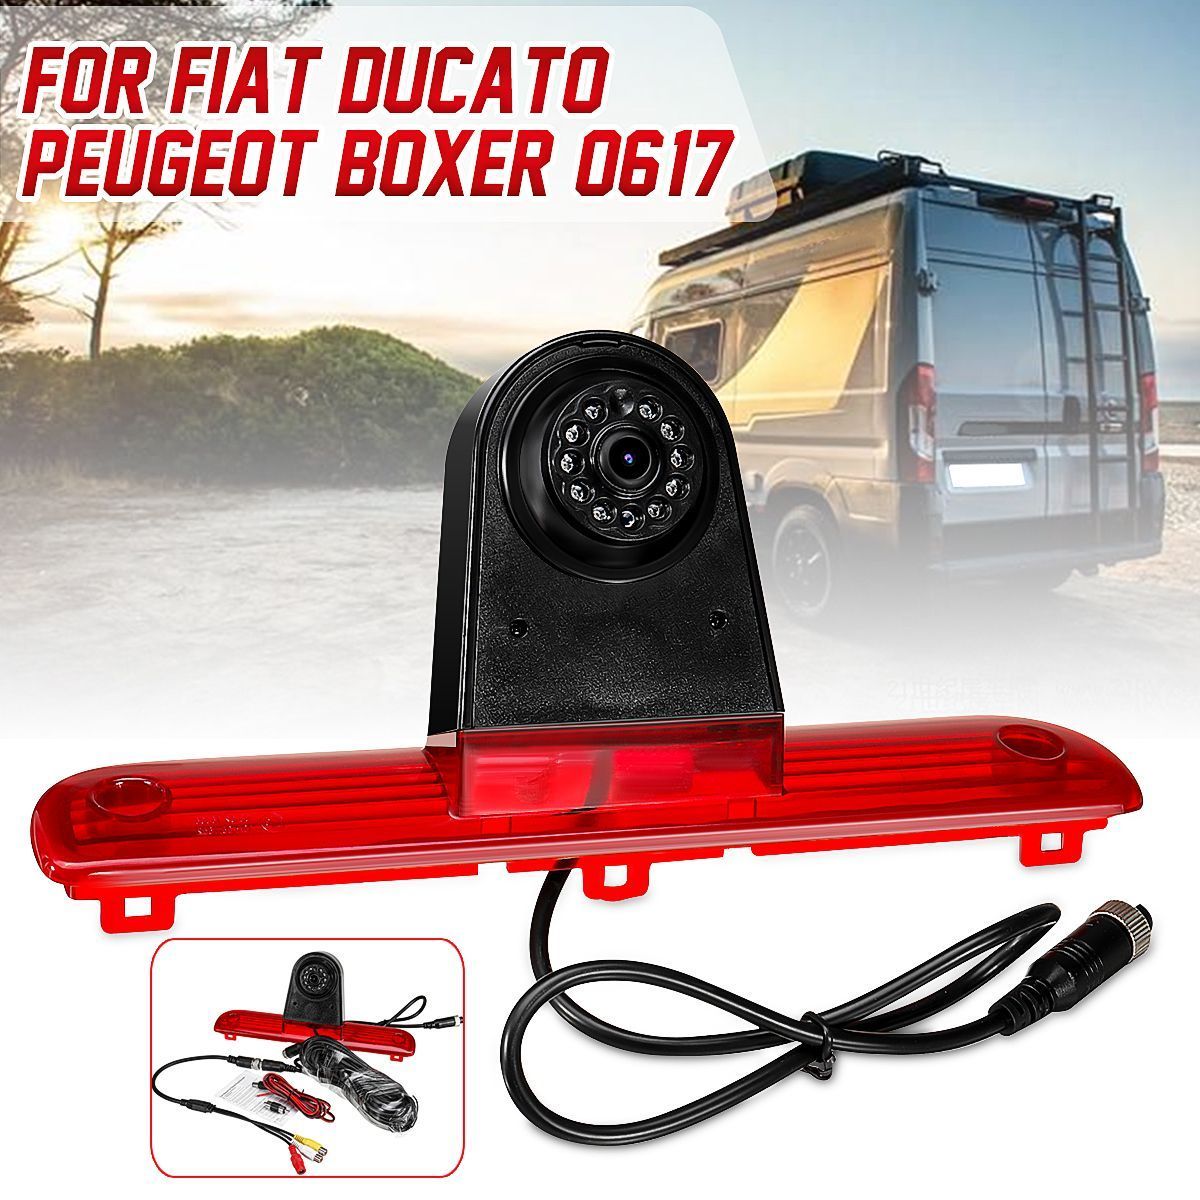 Car-DVR-Reversing-Backup-Rear-View-Brake-Light-Camera-For-Fiat-Ducato-Peugeot-Boxer-06-17-1577773